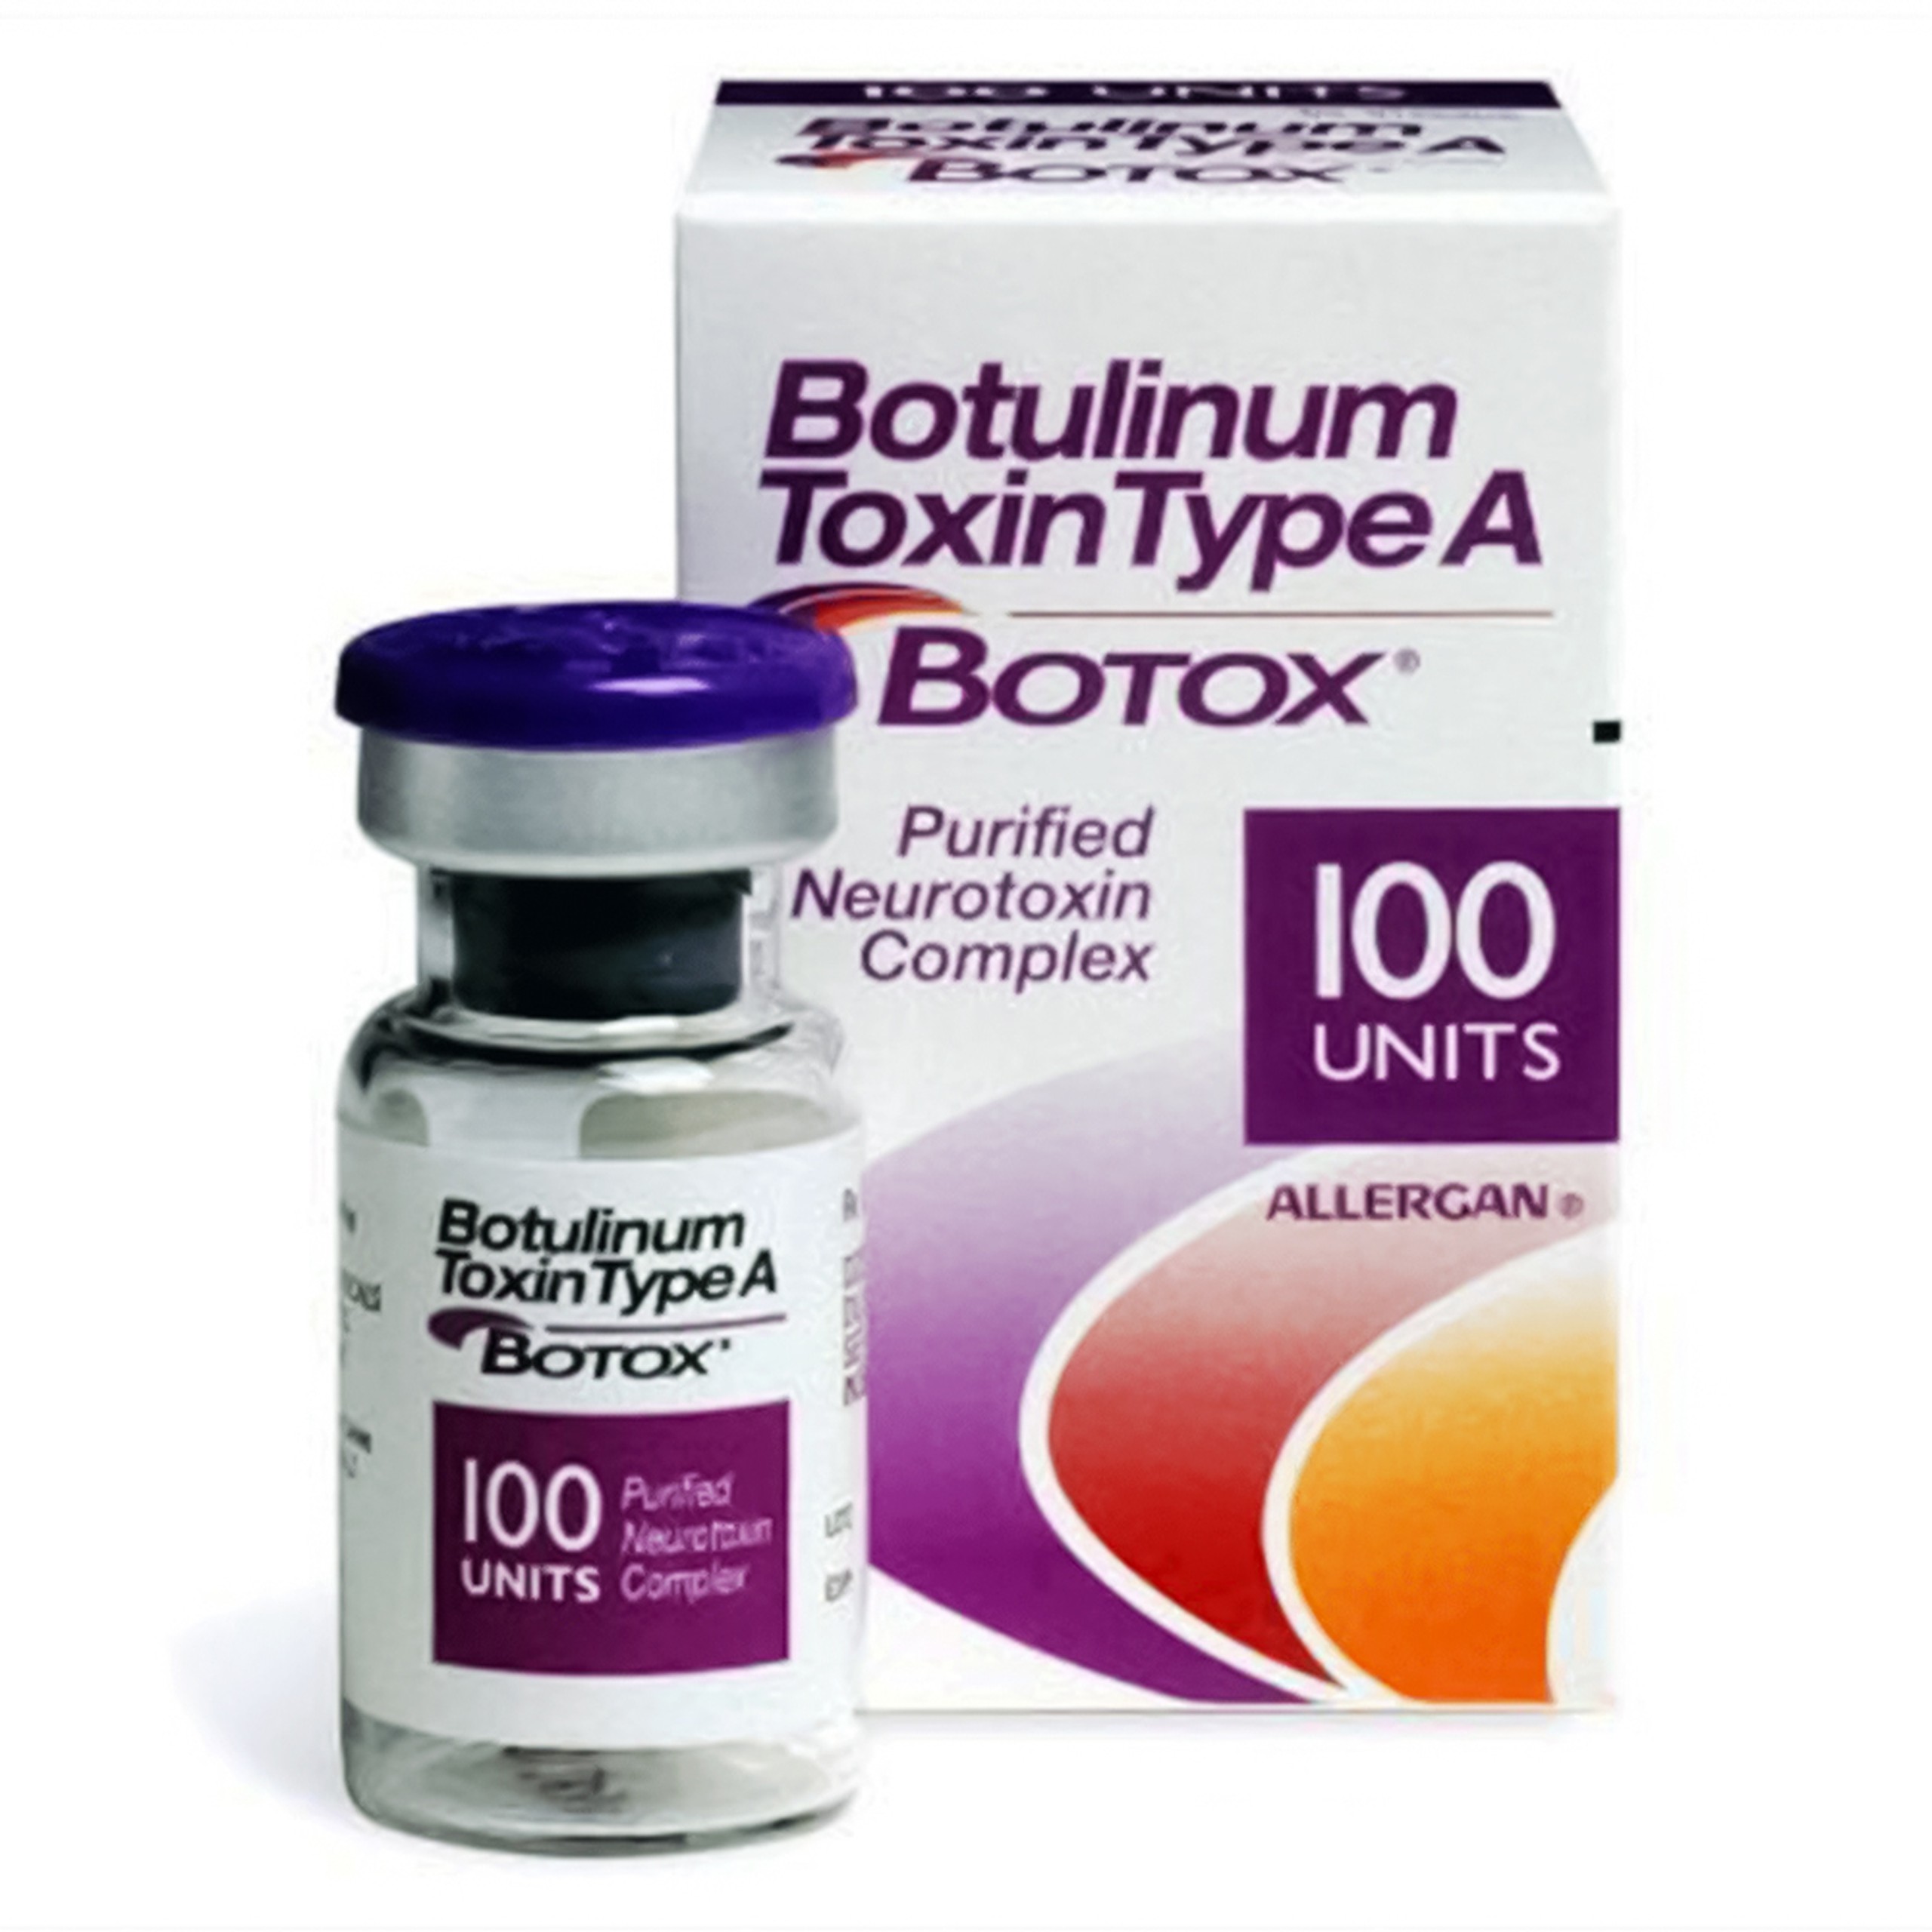 Thuốc tiêm Botulinum Toxin Type A điều trị rối loạn thần kinh, rối loạn bàng quang, rối loạn da (1 lọ)